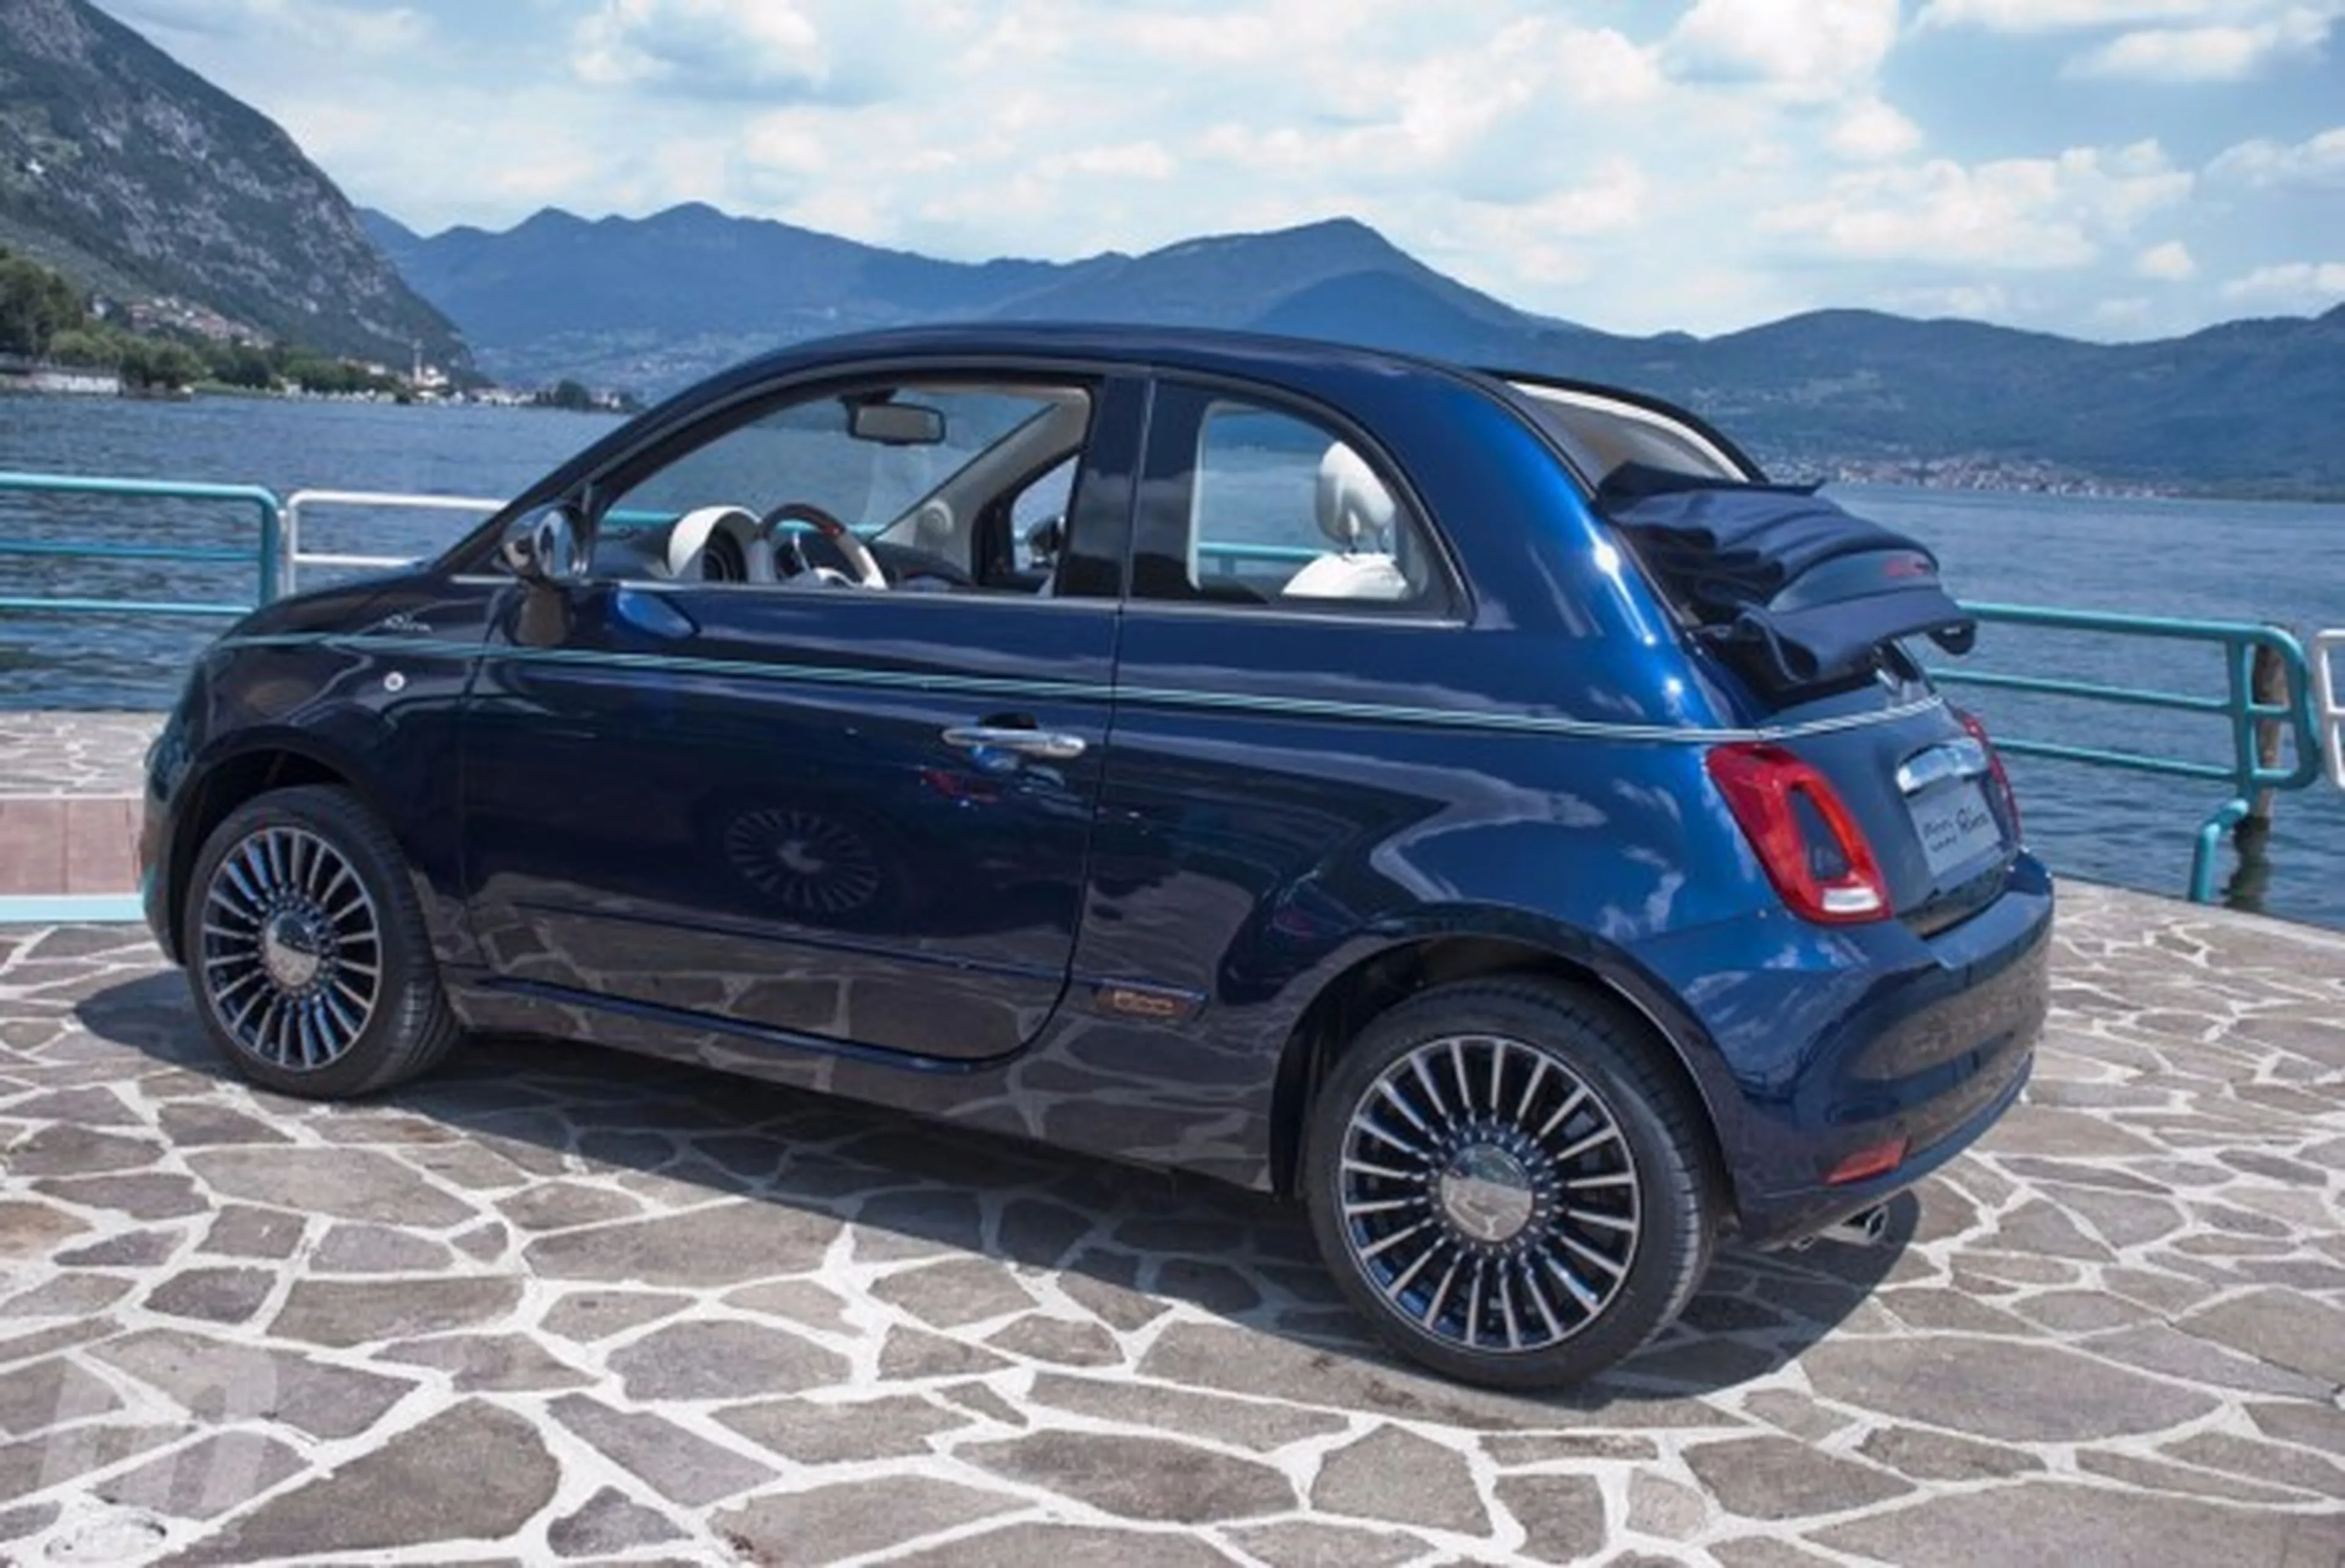 Accesorios para el Fiat 500: ¡Dele un toque de exclusividad a su Fiat!